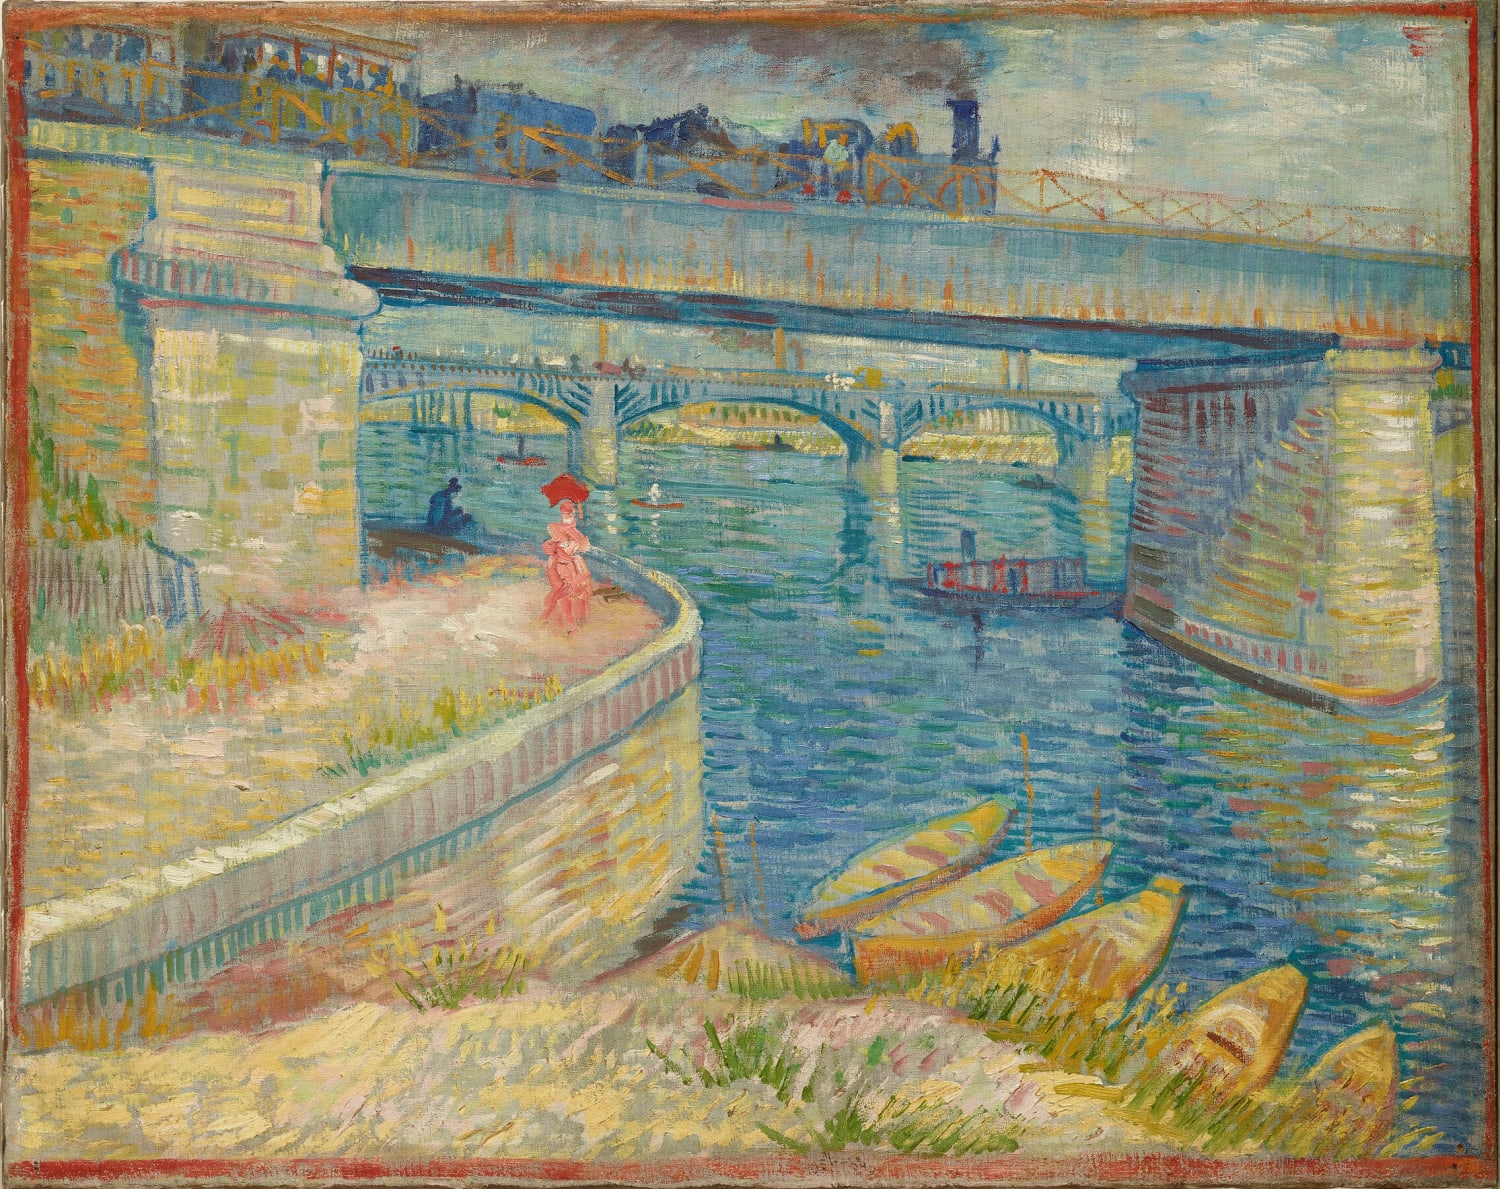 Vincent van Gogh - Bridges across the Seine at Asnières (1887)